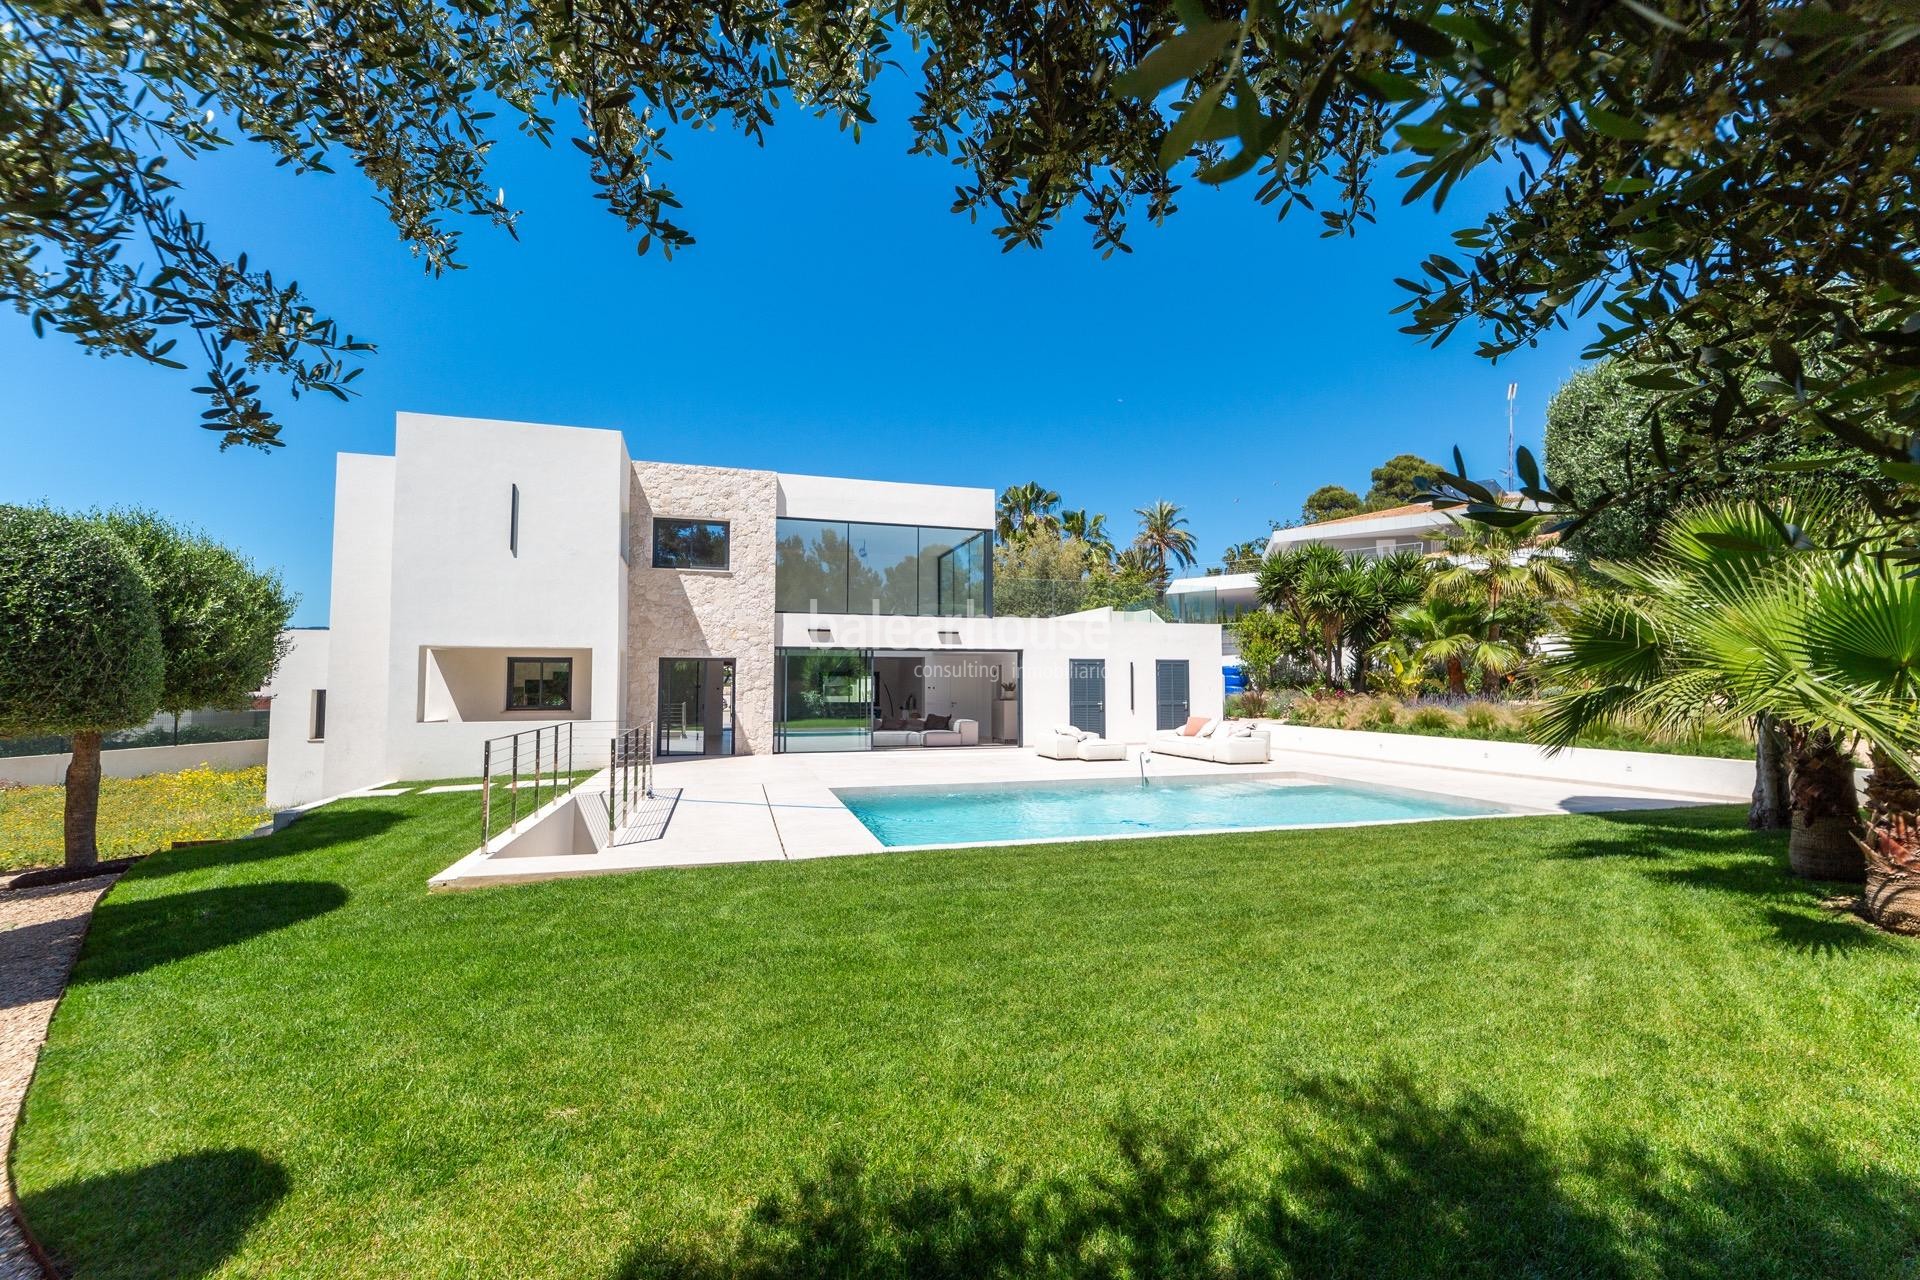 Makellose Moderna Designvilla voller Licht und großer Garten- und Poolflächen in Santa Ponsa